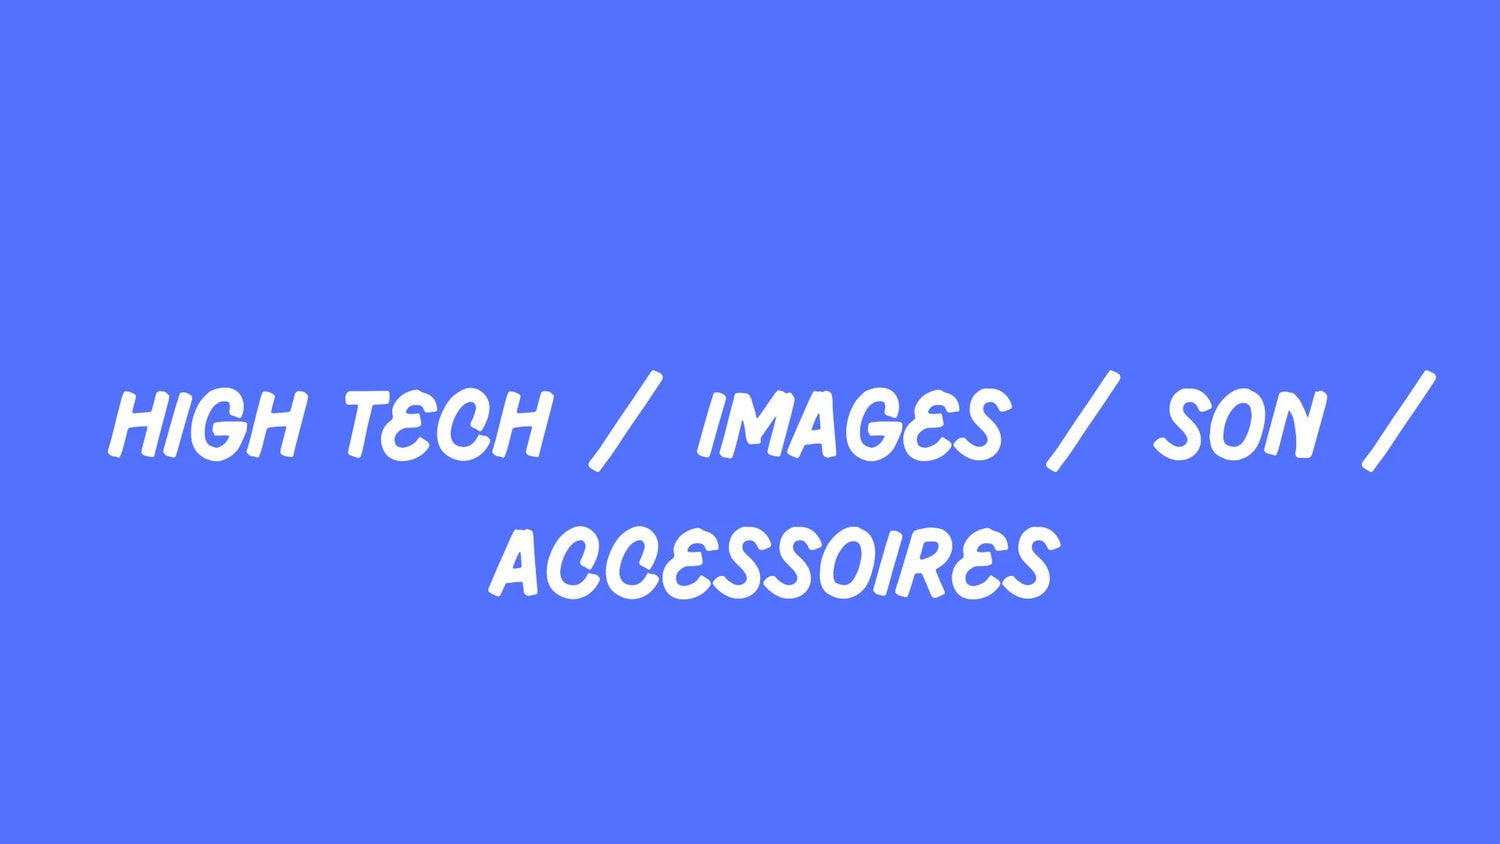 High Tech / Images / Son / Accessoires